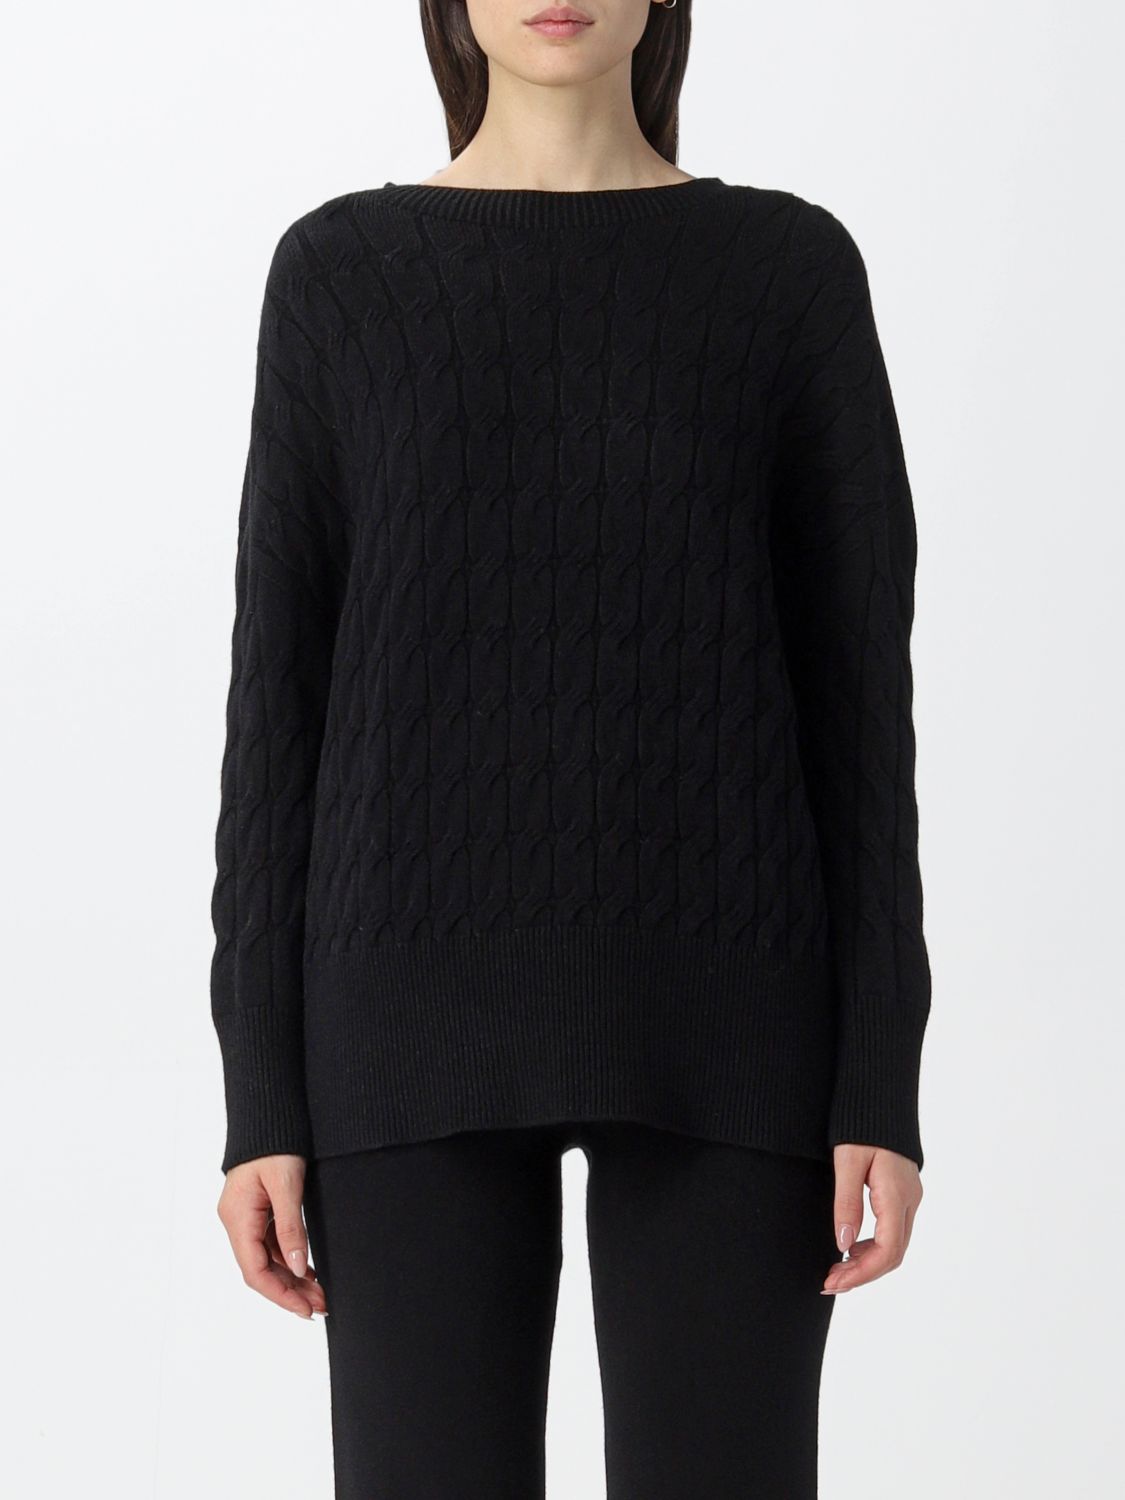 KAOS: sweater for woman - Black | Kaos sweater OIBPT020 online at ...